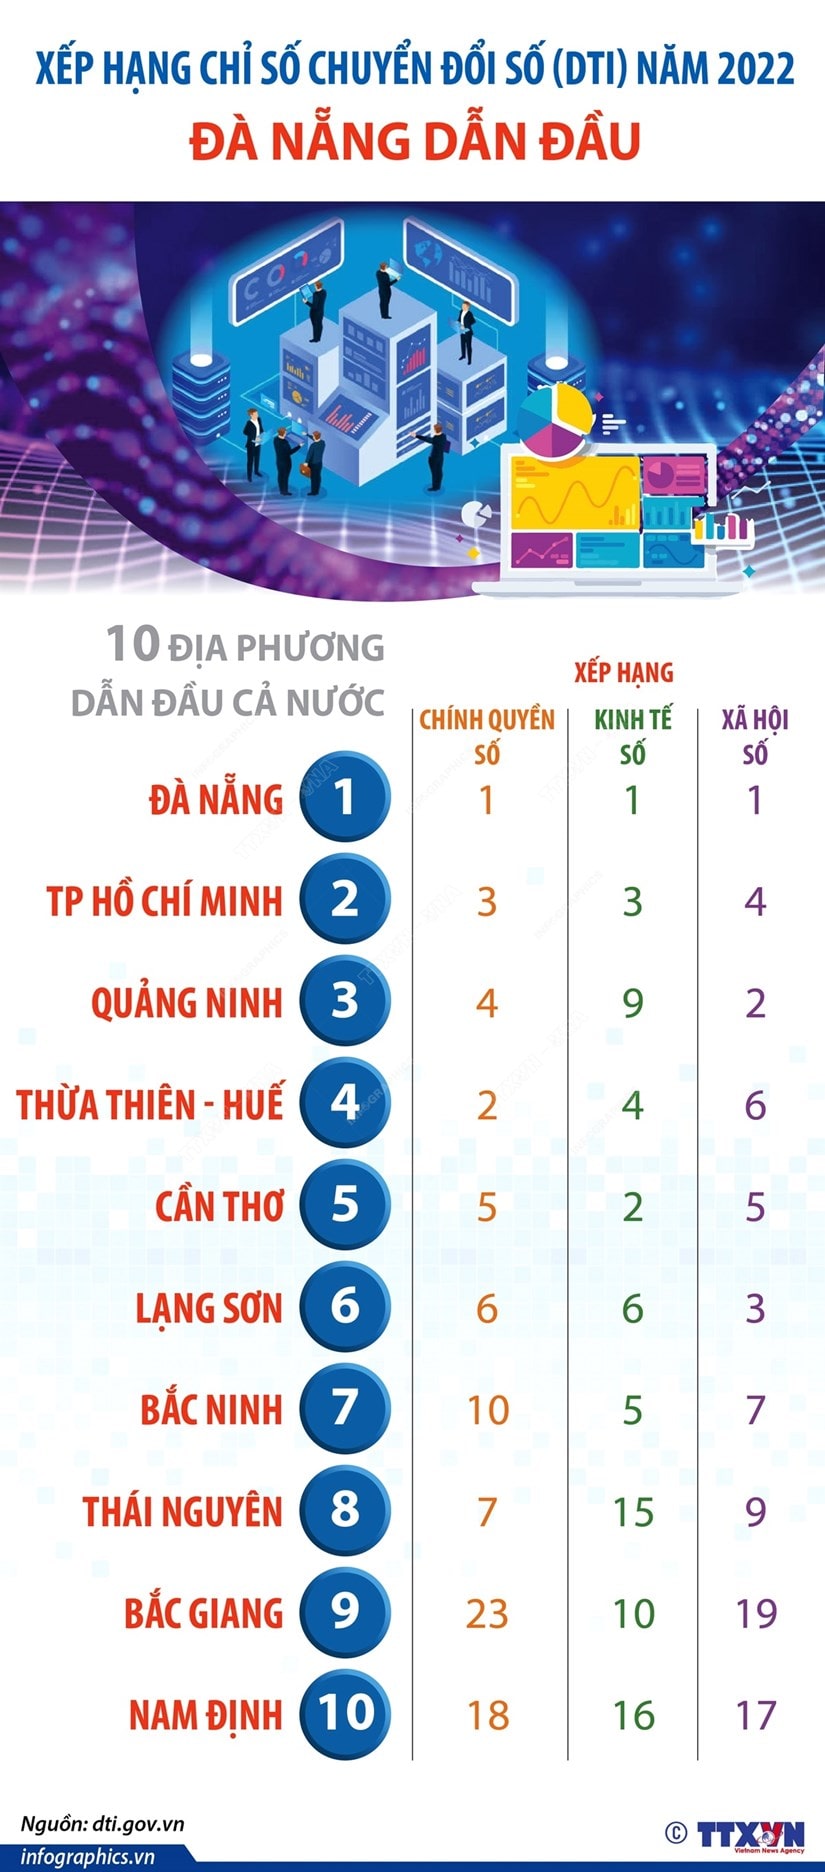 Da Nang dan dau xep hang Chi so chuyen doi so min - Đà Nẵng dẫn đầu xếp hạng Chỉ số chuyển đổi số (DTI) năm 2022